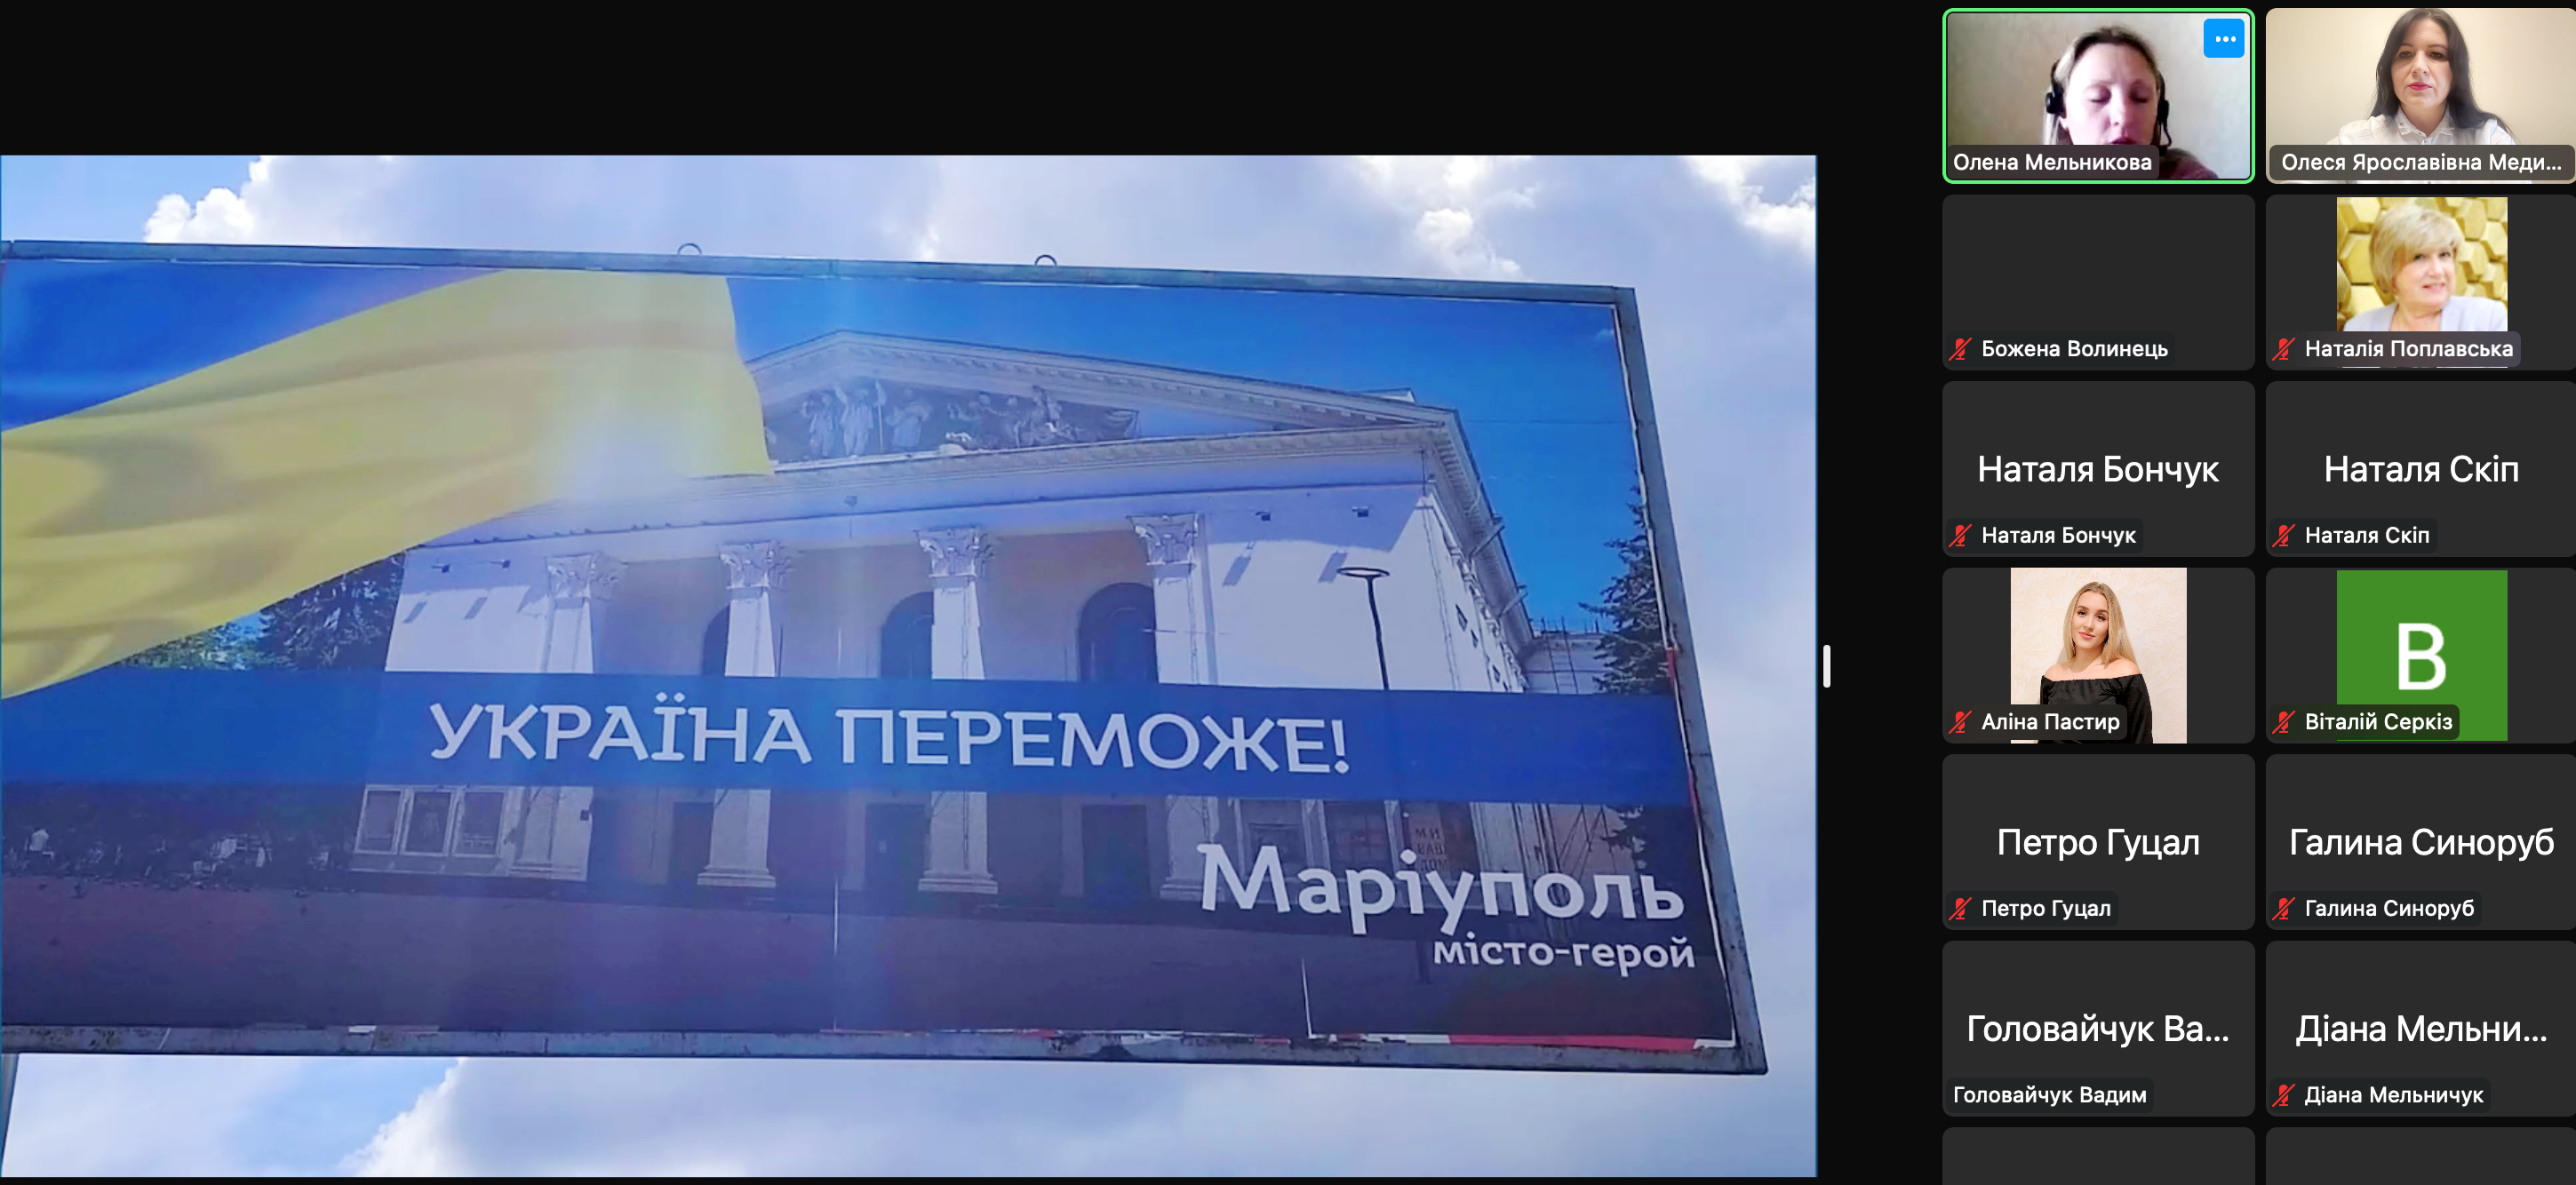 Білборд в Одесі на підтримку Маріупол